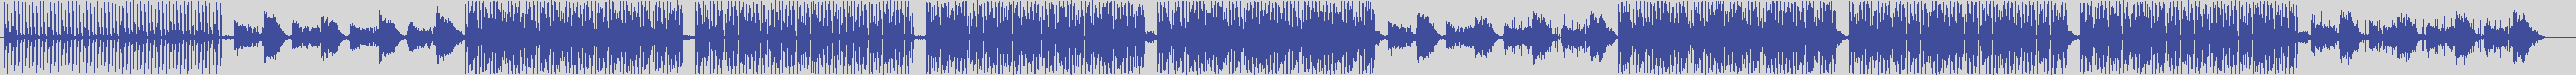 atomic_recordings [AR012] Mark Sentor - So Close to You [Original Mix] audio wave form